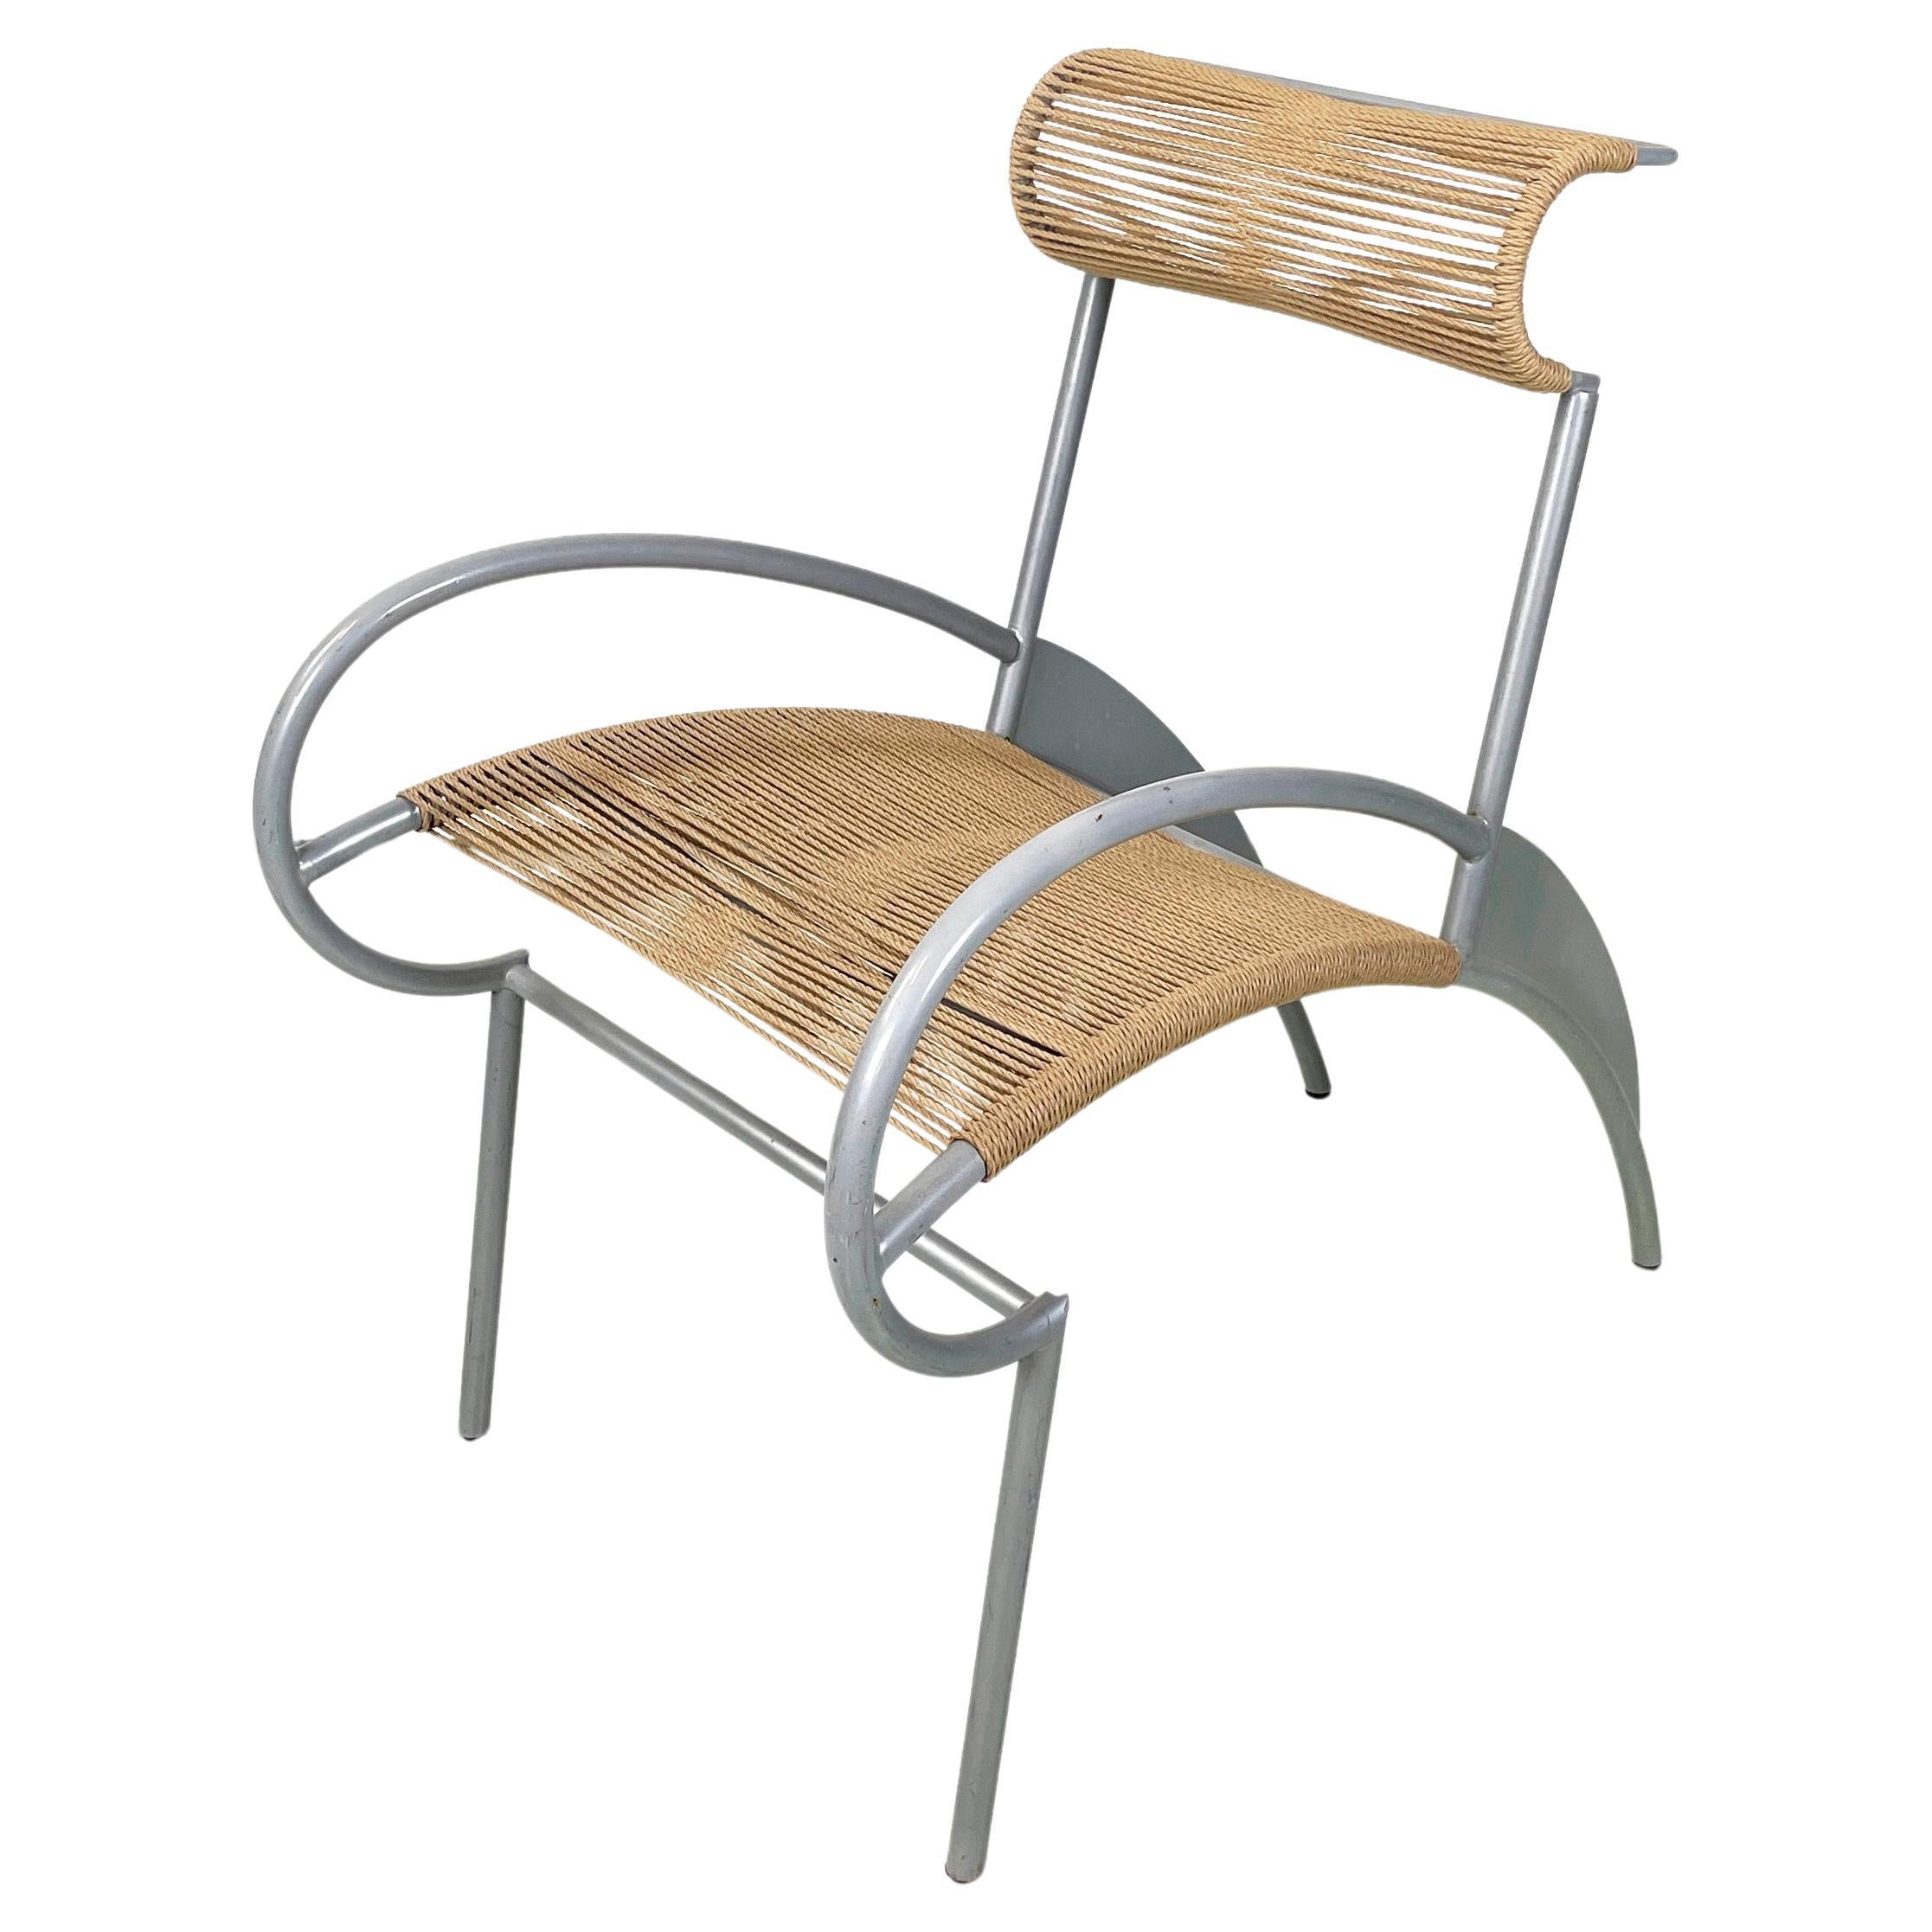 Moderner italienischer Stuhl Juliette aus Seil und grauem Stahl von Massimo Iosa-Ghini, 1990er Jahre